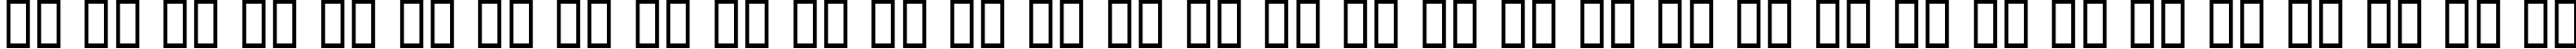 Пример написания русского алфавита шрифтом Millennia